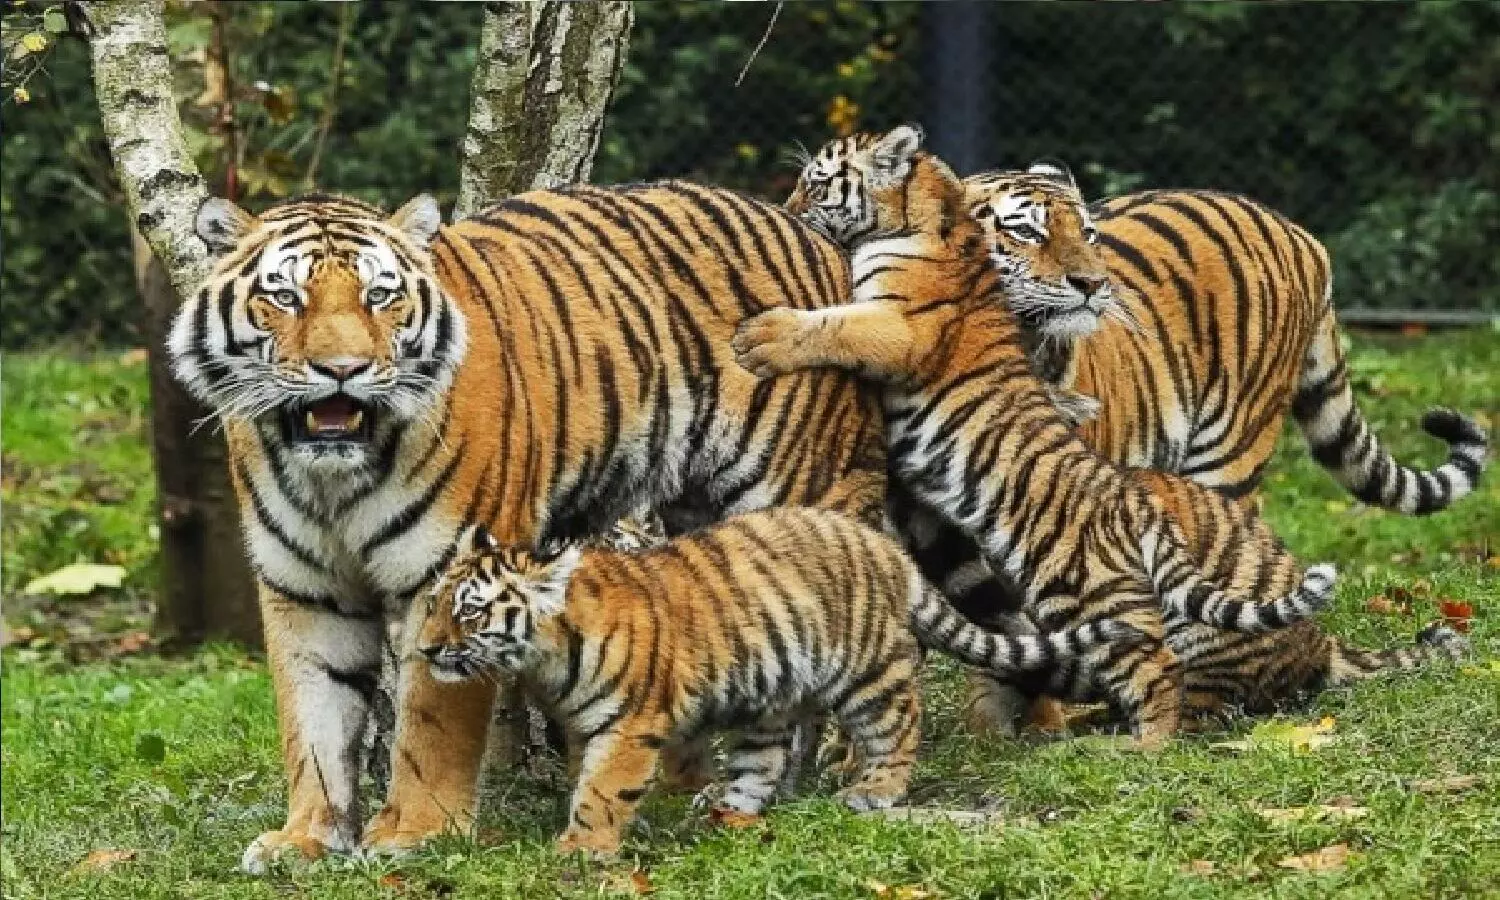 National Tiger Day: पूरी दुनिया में सबसे ज्यादा बाघ मध्य प्रदेश में! पिछले साल 526 थे और आज 700 पहुंच गई है टाइगर्स की आबादी